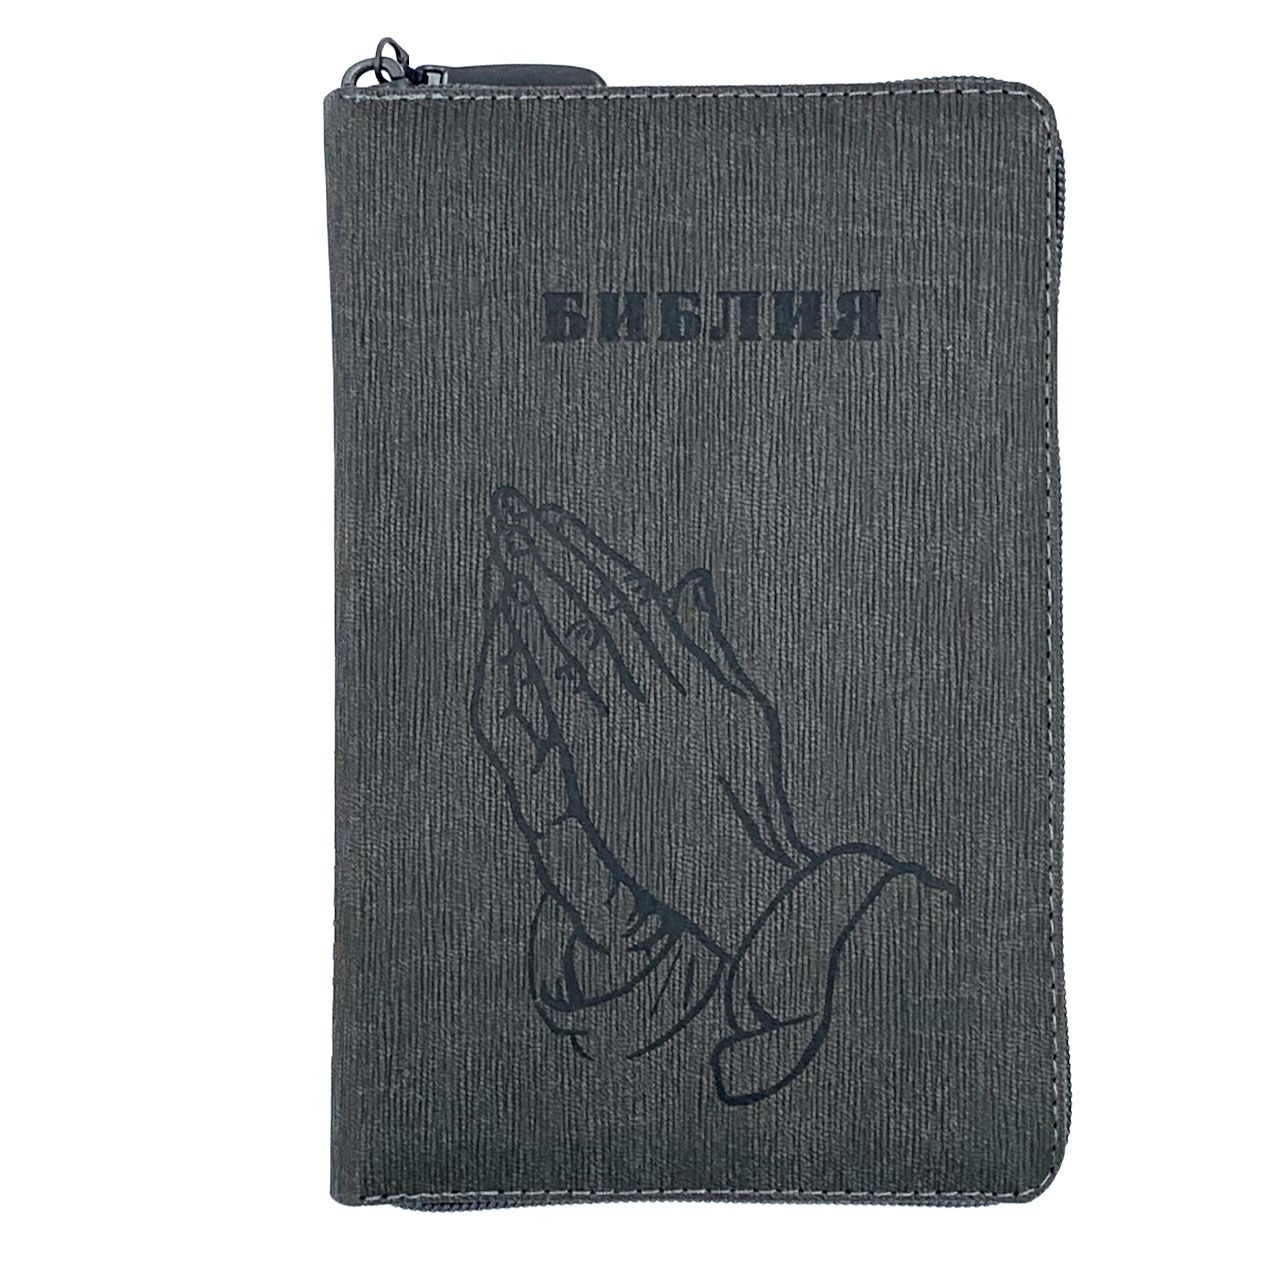 Библия 048 zti код 24048-23 термо штамп "руки молящегося", переплет из искусственой кожи  на молнии с индексами, цвет серый графит, формат 125*195 мм